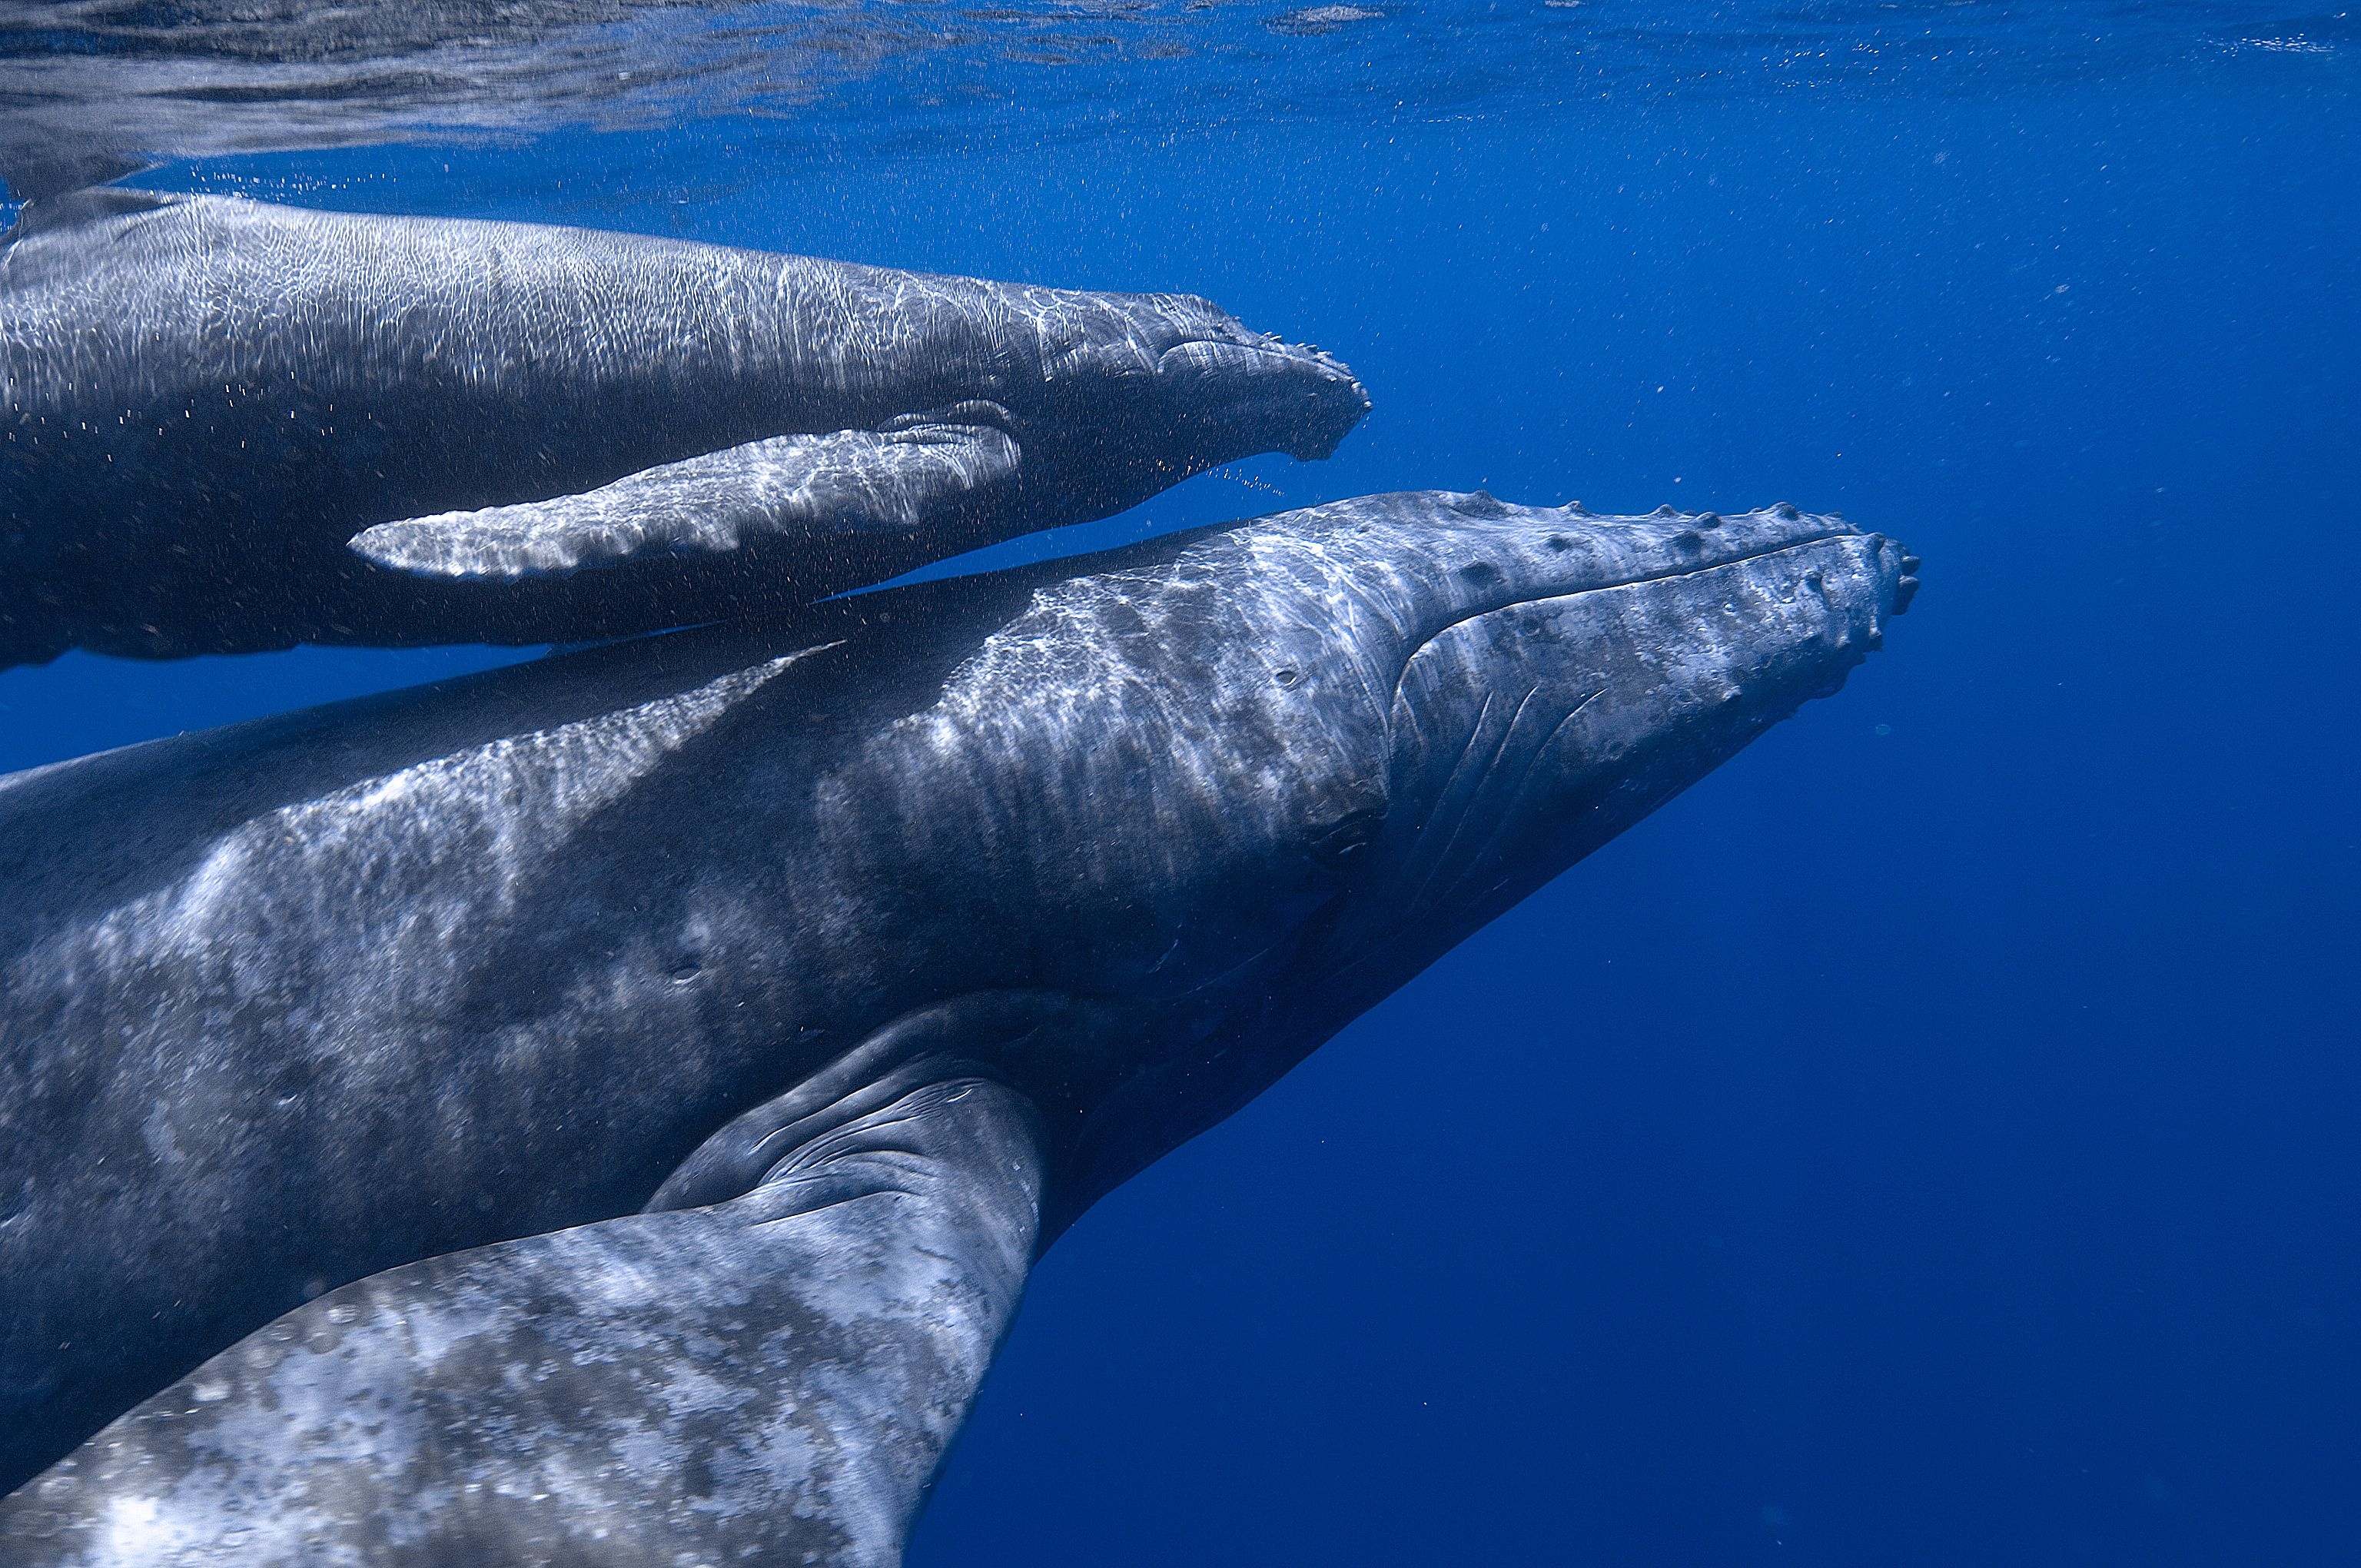 Шерсть у китообразных. Резерват китов Эль-Вискаино. Китообразные синий кит. Синий кит (голубой кит). Горбатый кит.